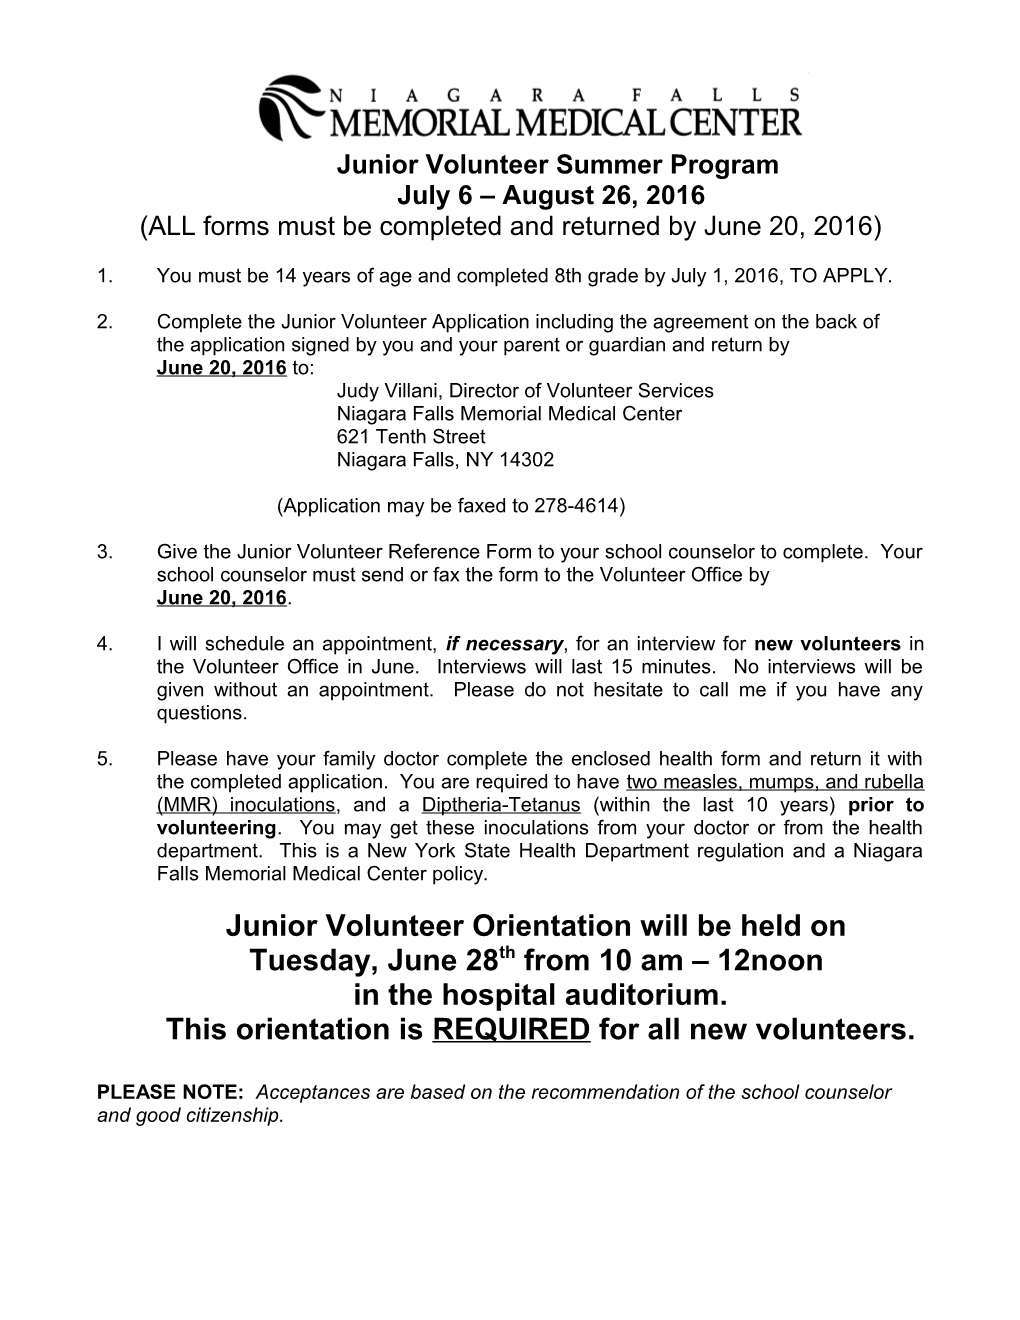 Junior Volunteer Instruction Sheet